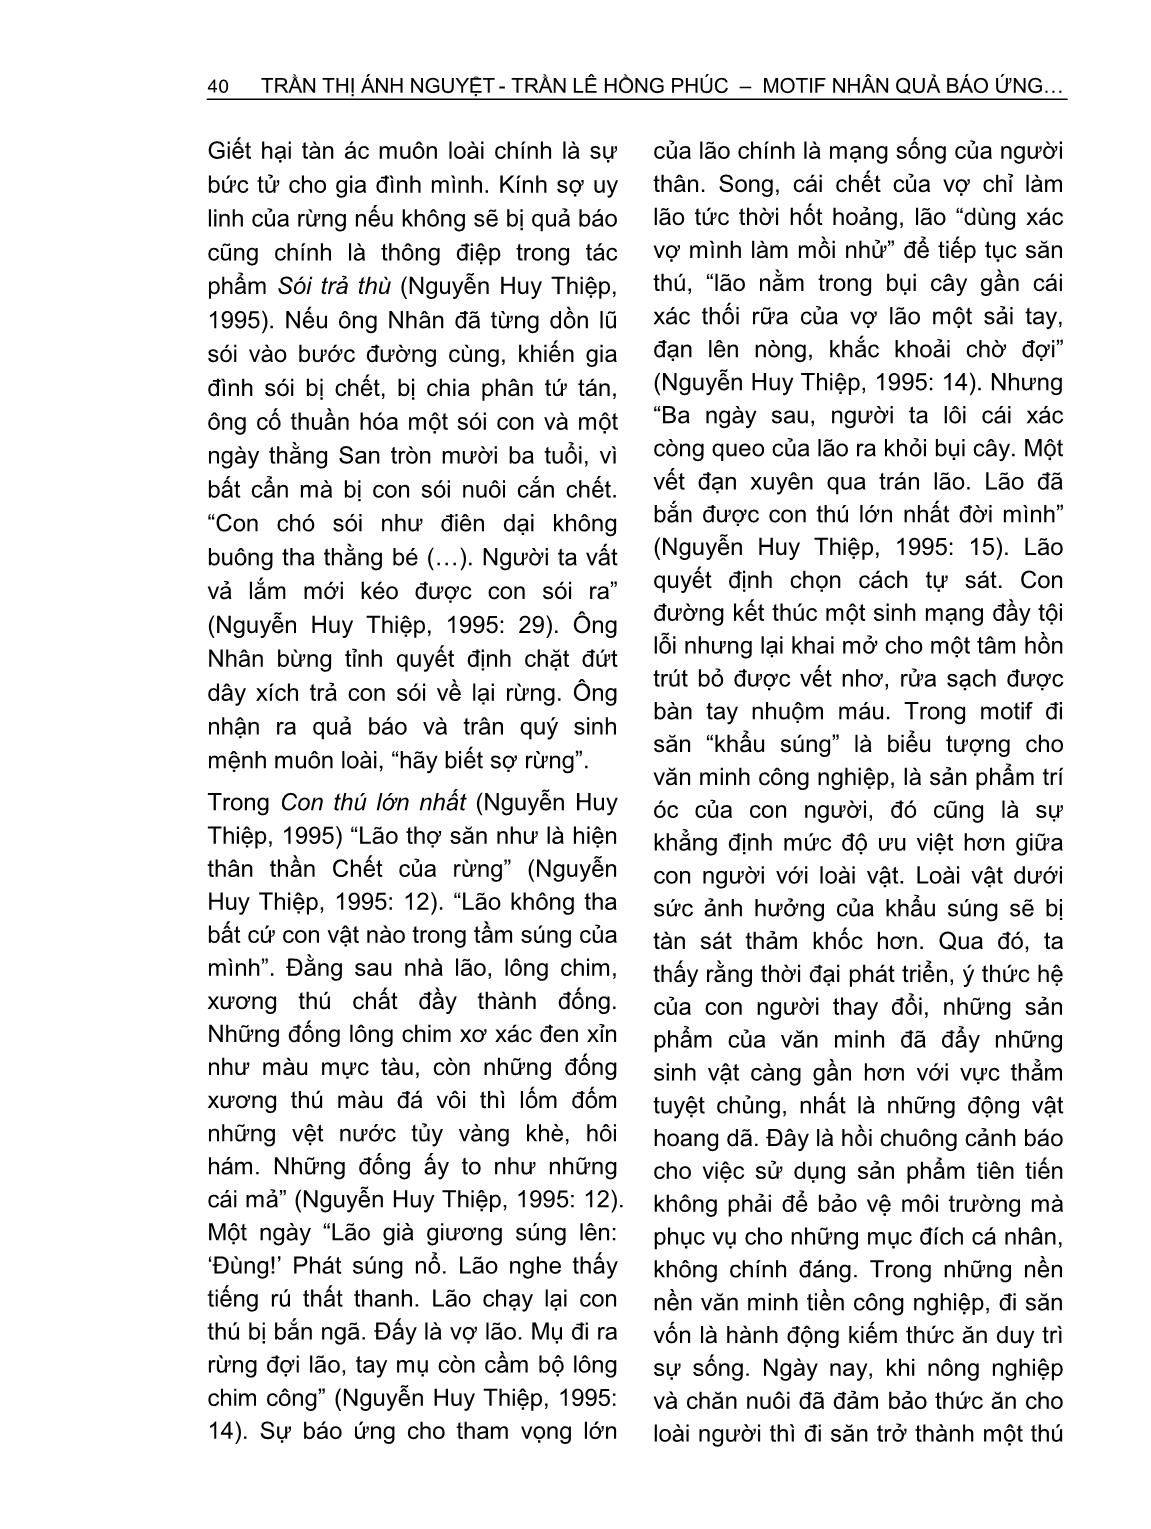 Motif nhân quả báo ứng trong văn xuôi sinh thái Việt Nam đương đại từ góc nhìn Phật Giáo trang 8